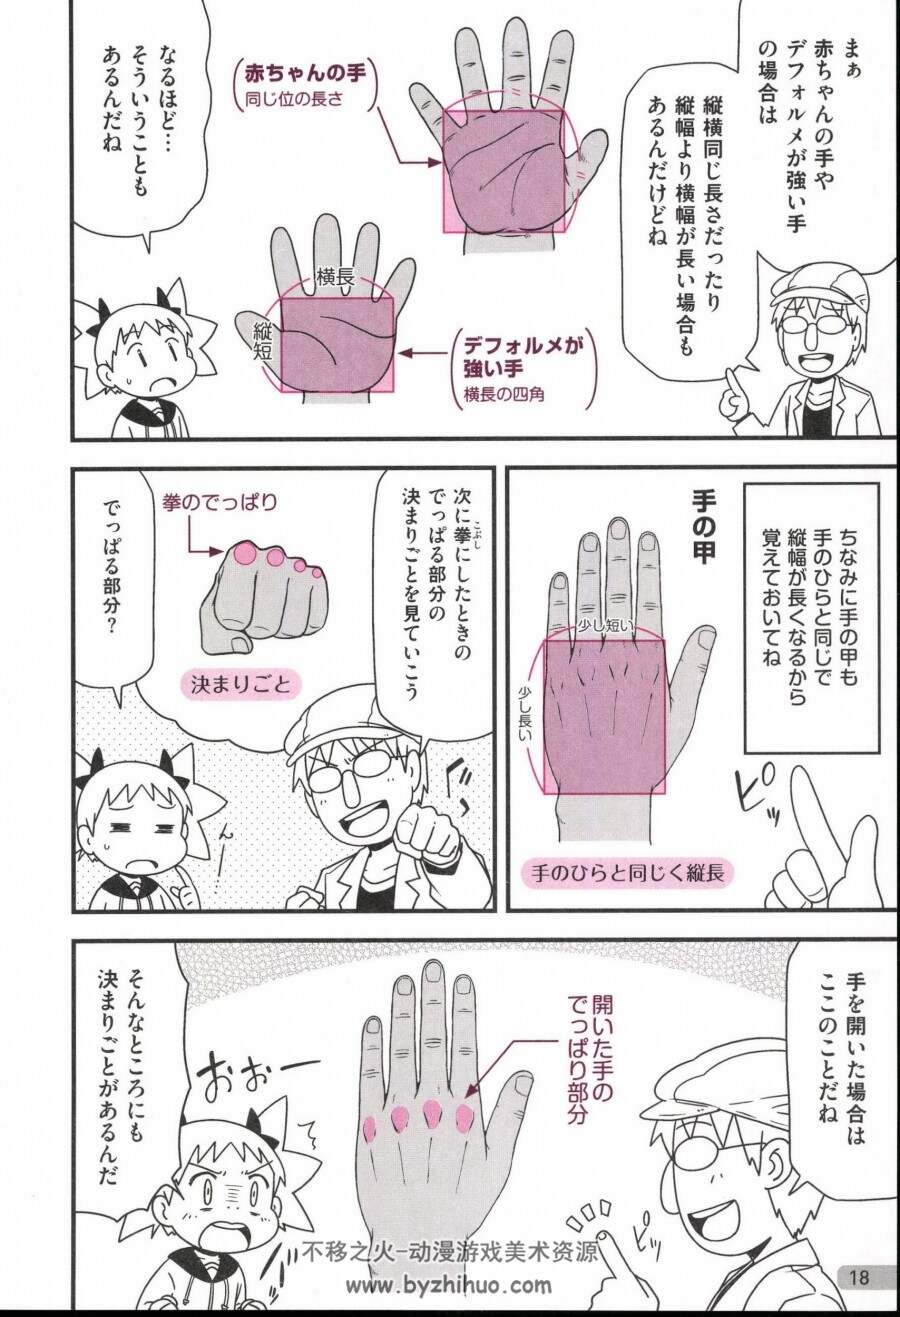 动漫人物手部画法 日文版 百度网盘下载 227P